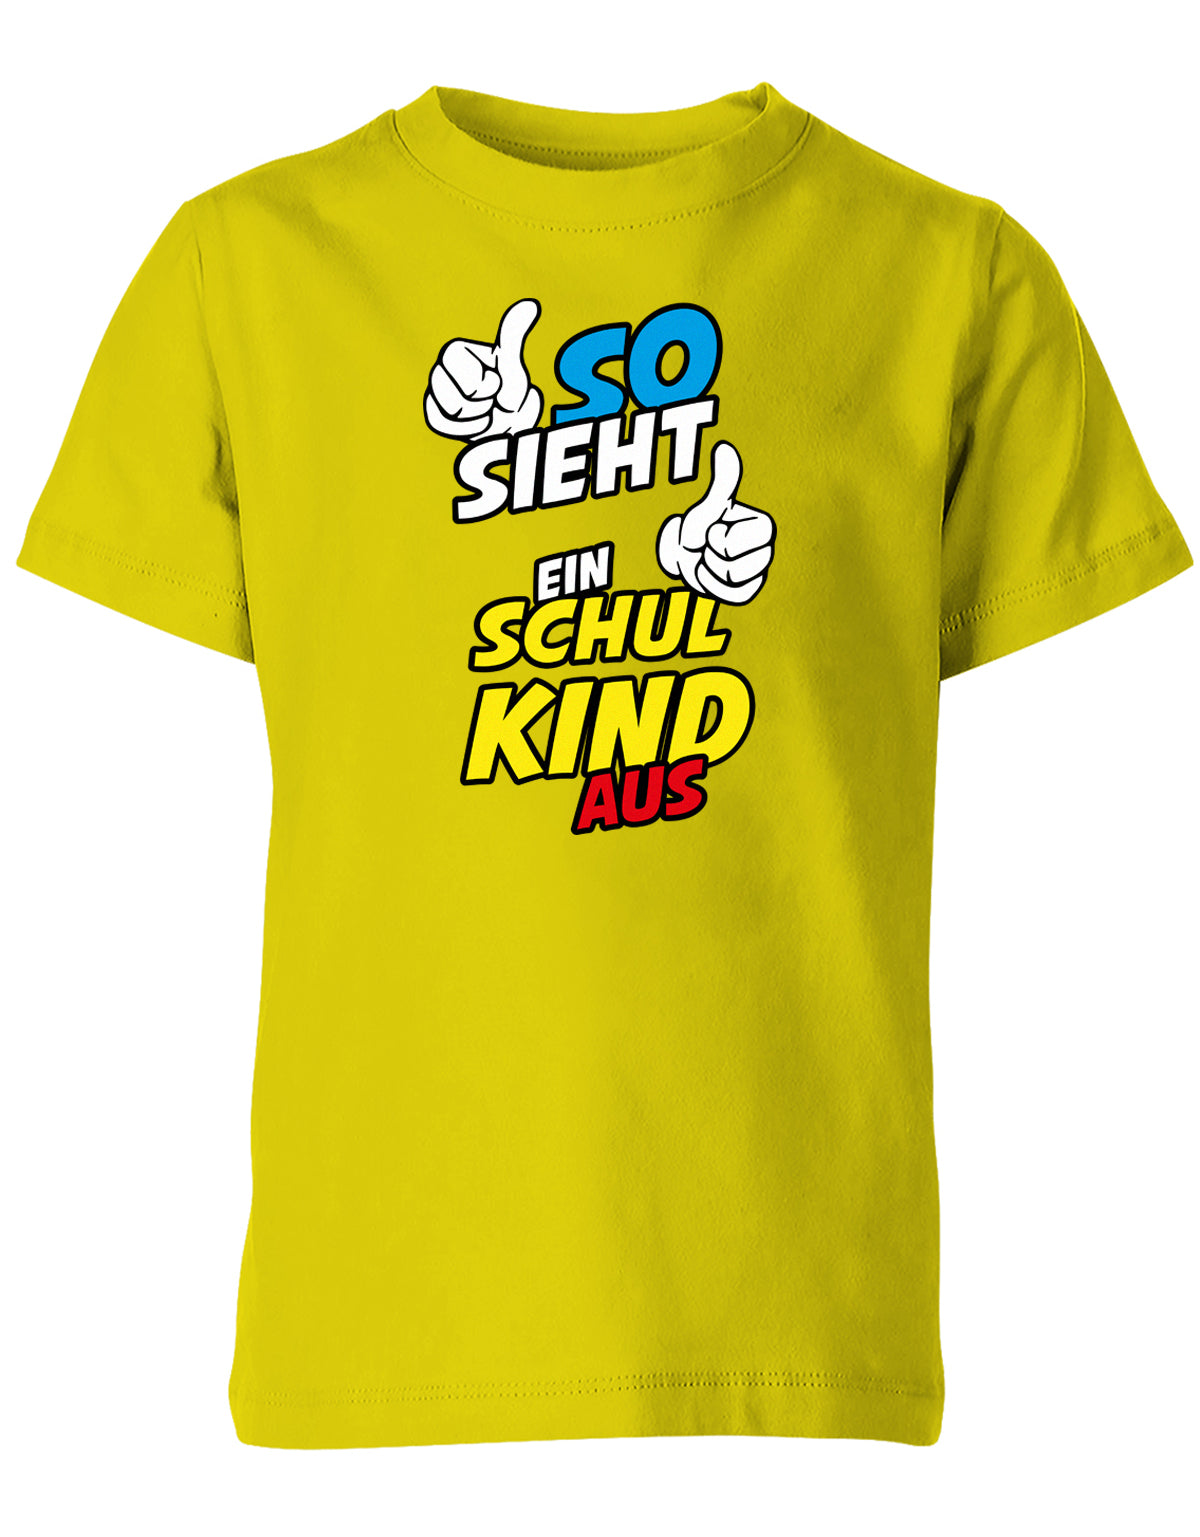 So sieht ein Schulkind aus - Geschenk zur Einschulung - 1. Klasse - Kinder T-Shirt Gelb